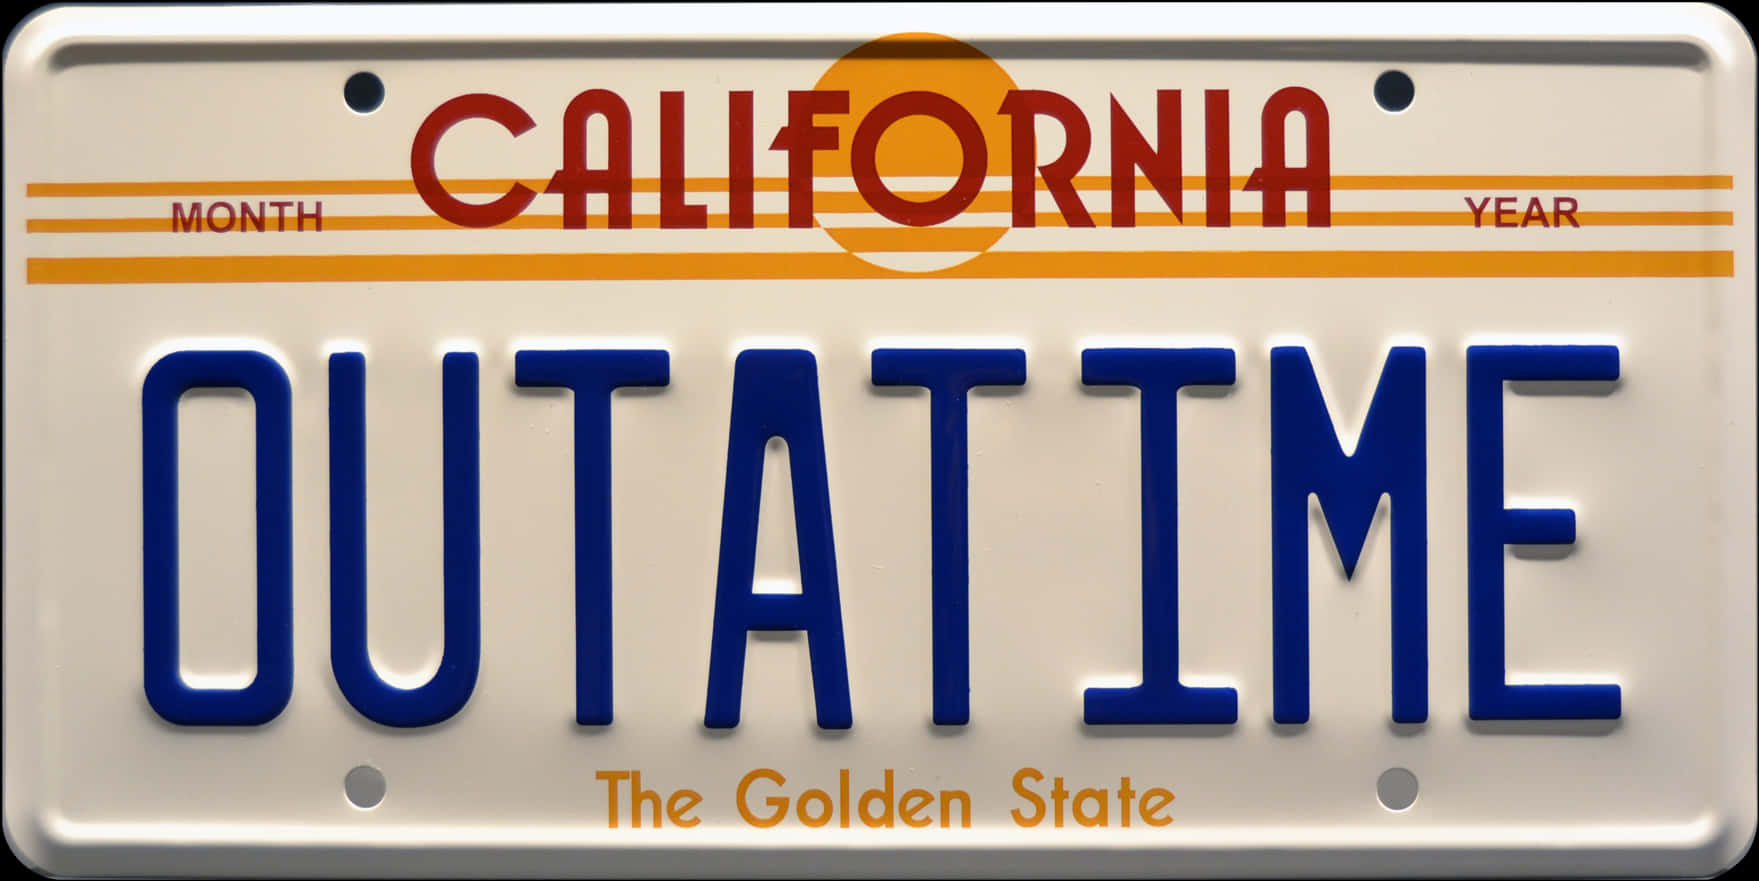 California O U T A T I M E License Plate PNG image